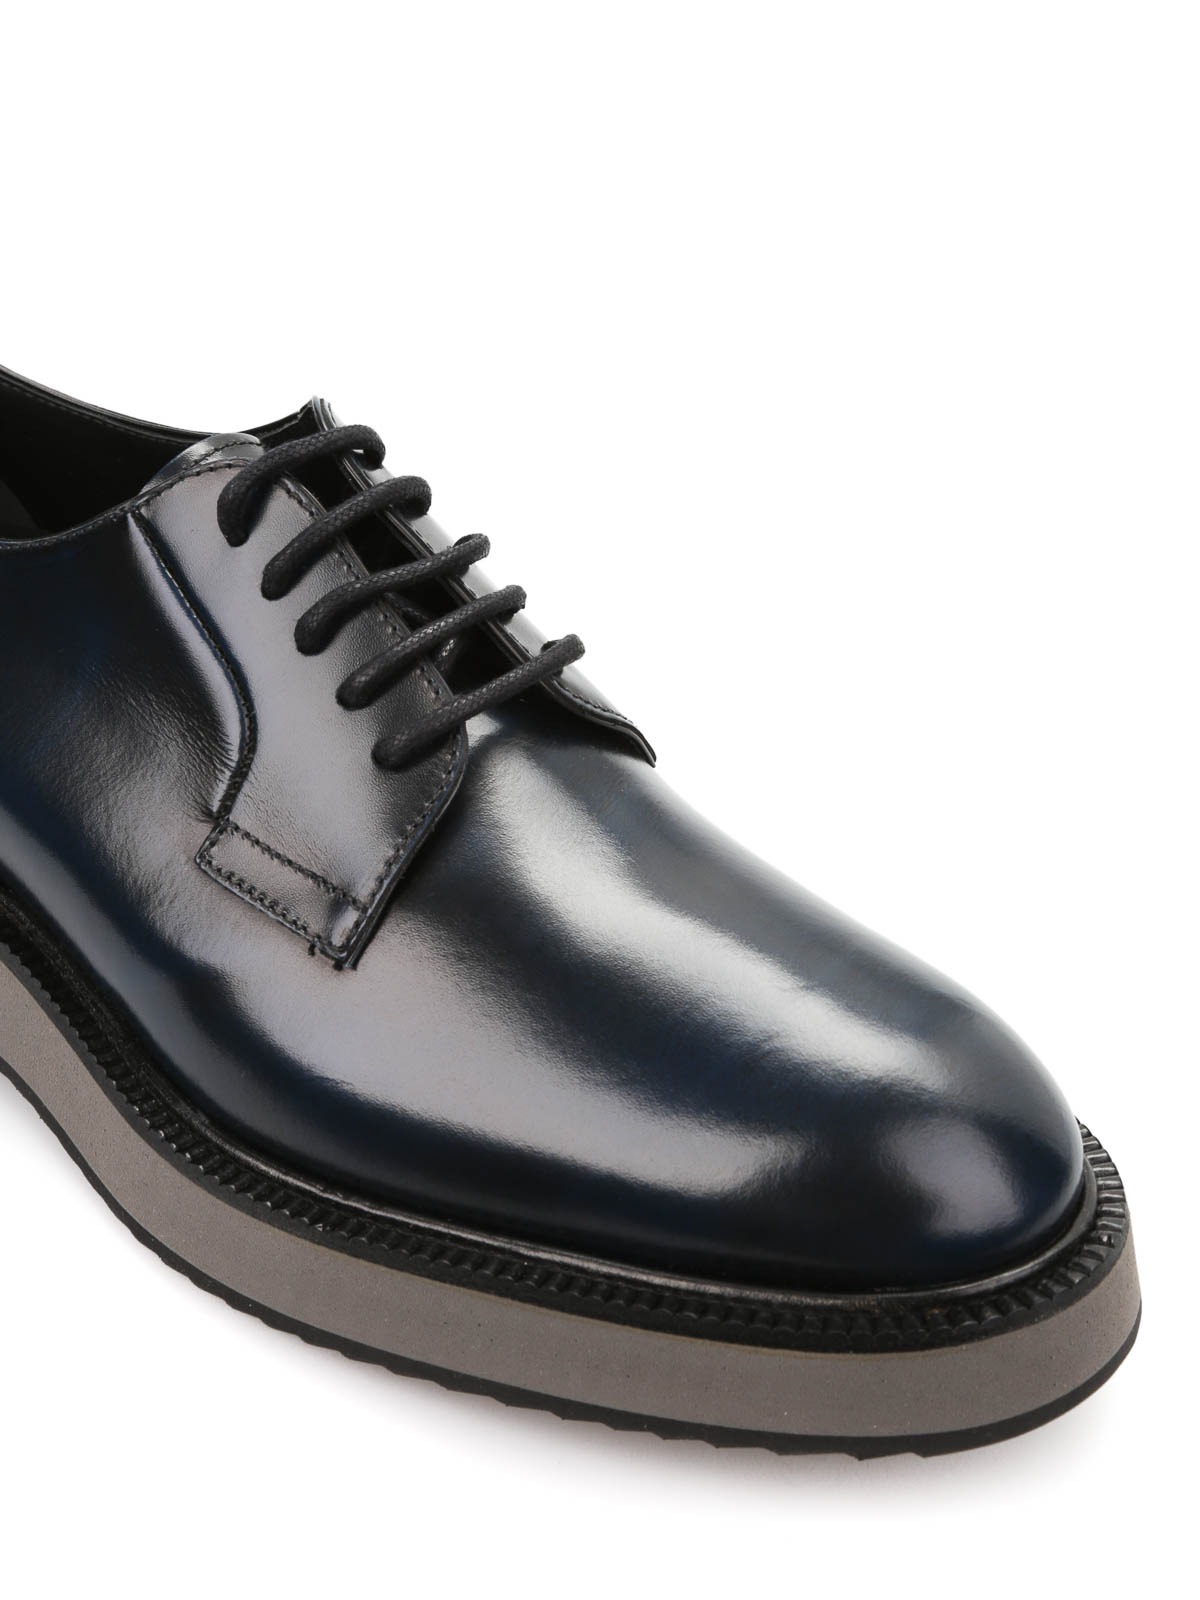 Factureerbaar Hechting naar voren gebracht Lace-ups shoes Hogan - H271 derby shoes - HXM2710S5606Q6U807 | iKRIX.com